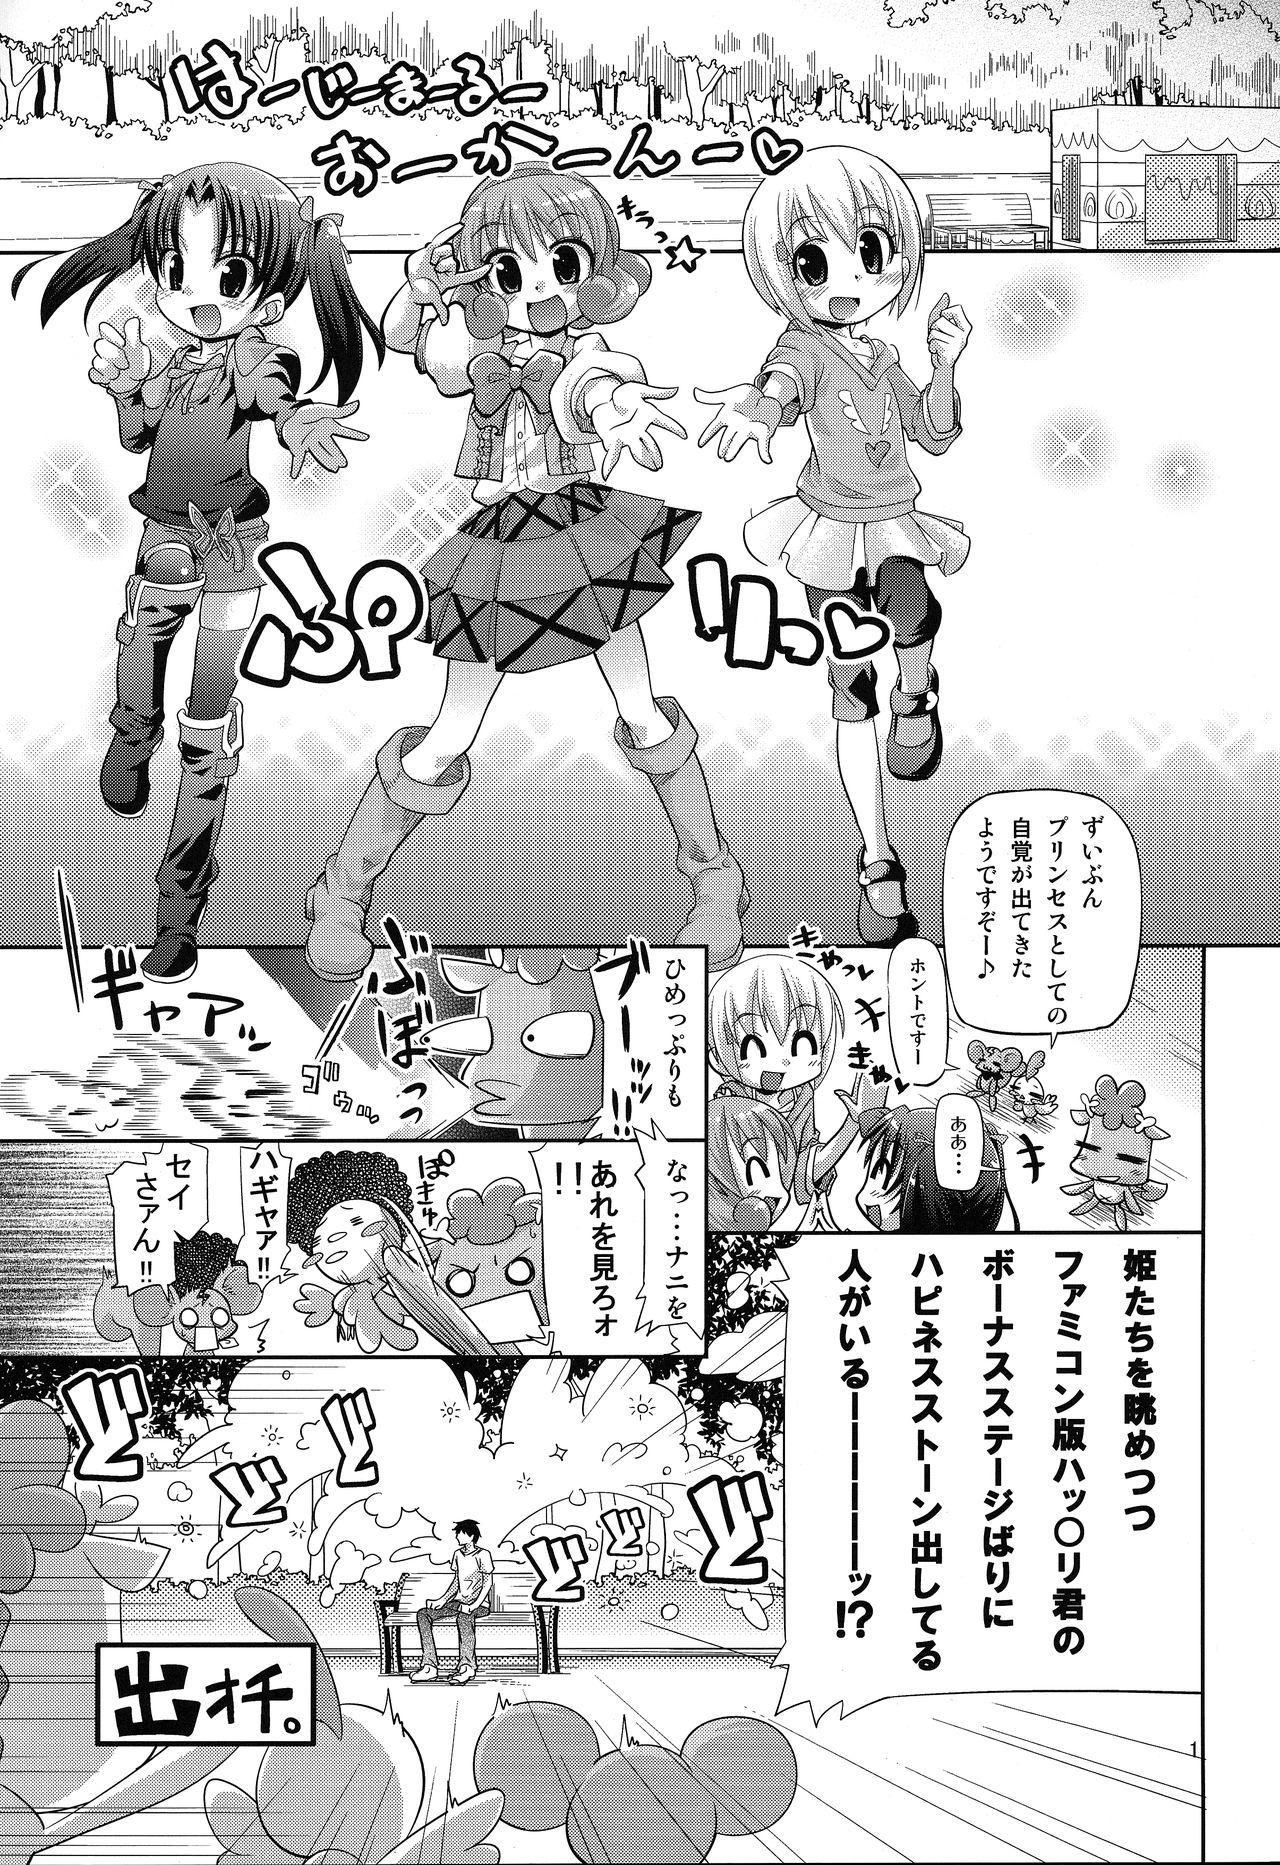 Sola 無限ハピネストーン増殖withoutひめチェン - Hime chen otogi chikku idol lilpri Family Sex - Page 2